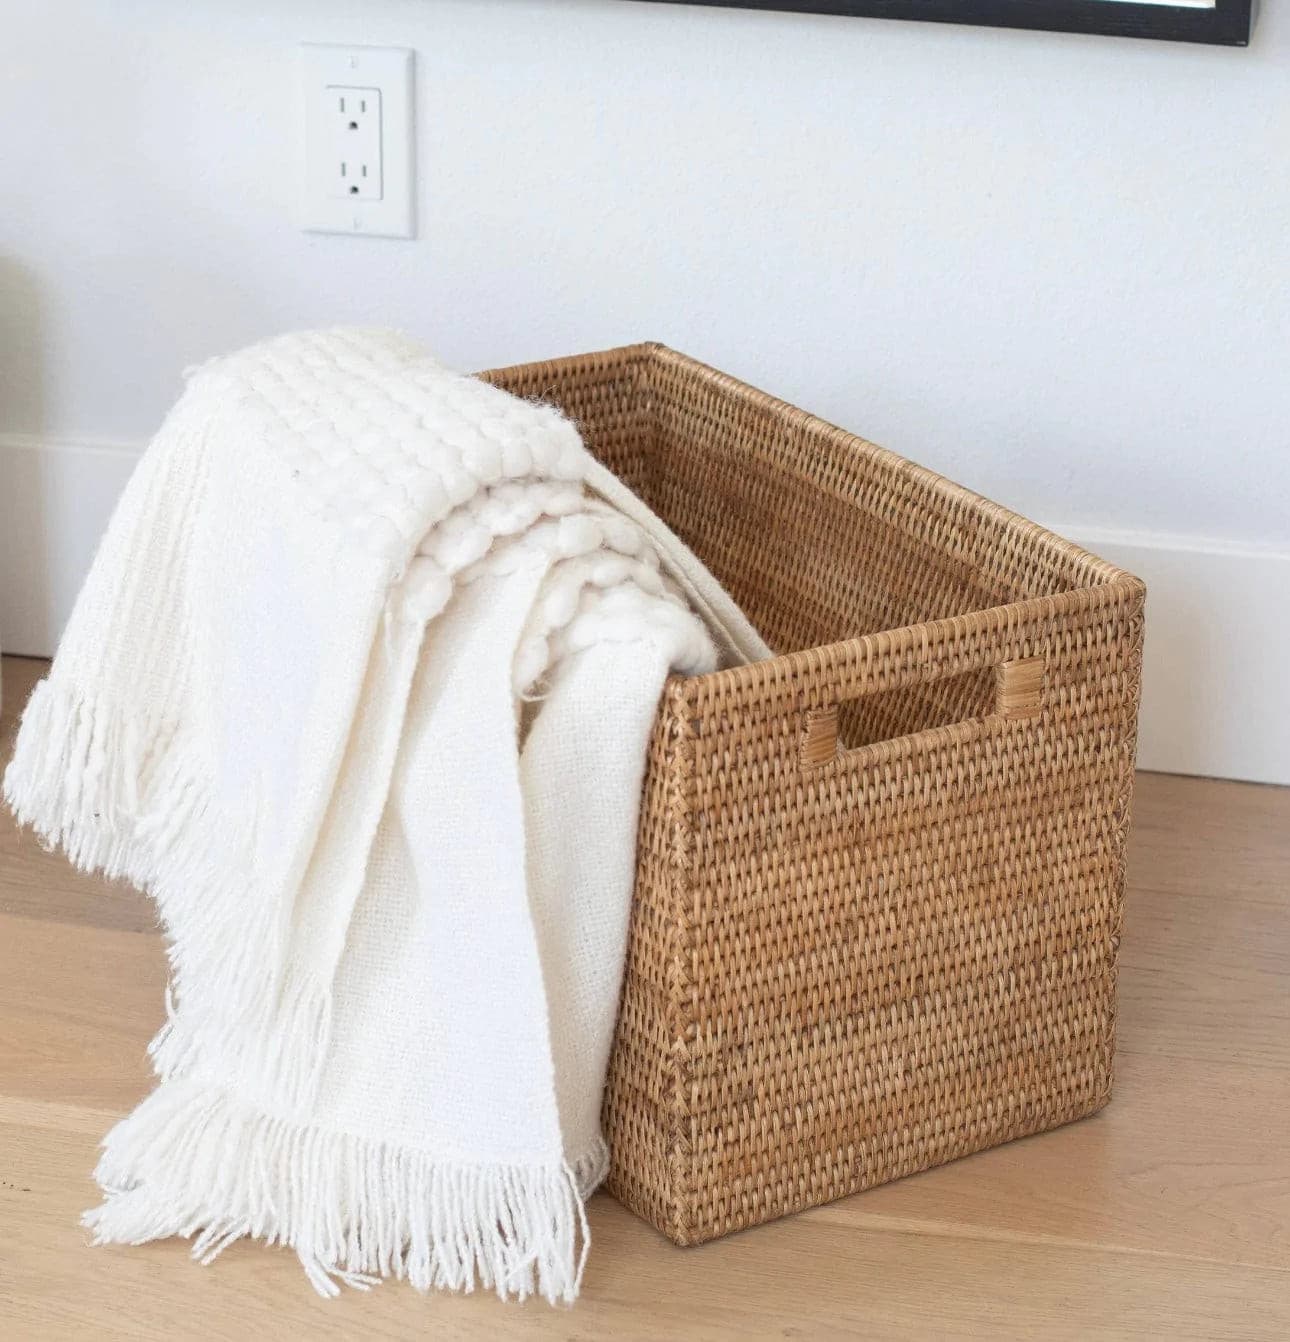 Woven rattan small square baskets - Terrestra